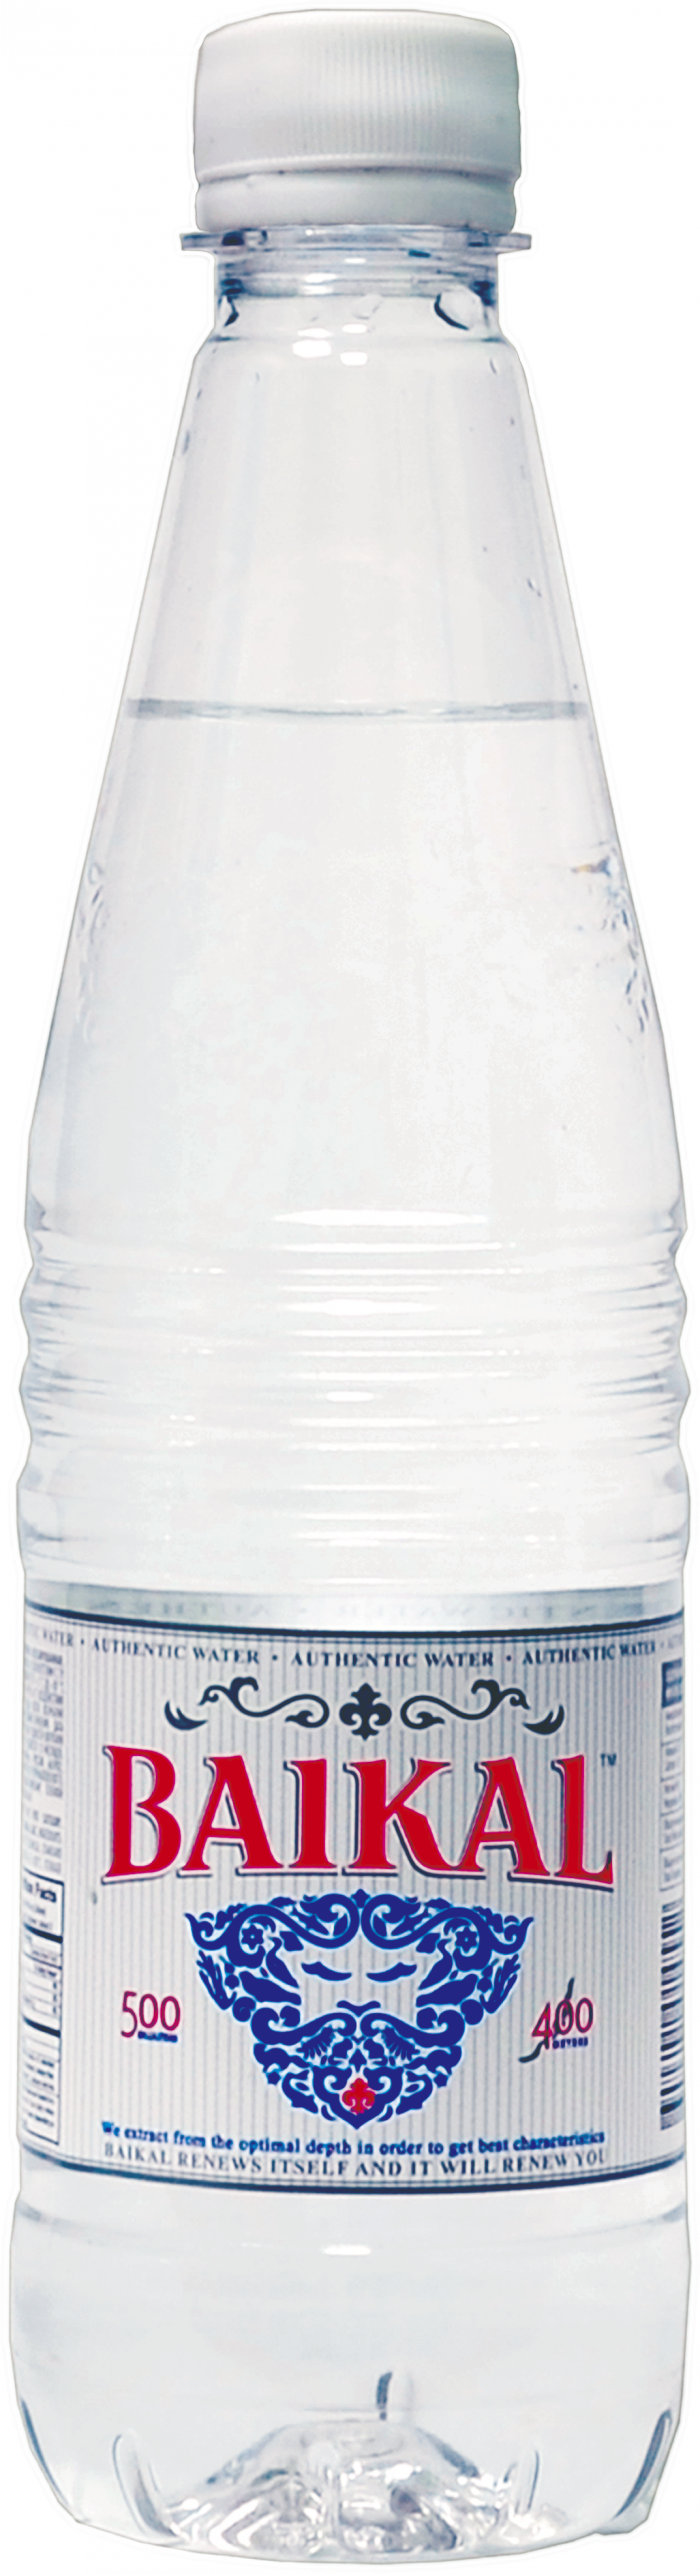 पानी की बोतल, मिनरल वाटर की बोतल